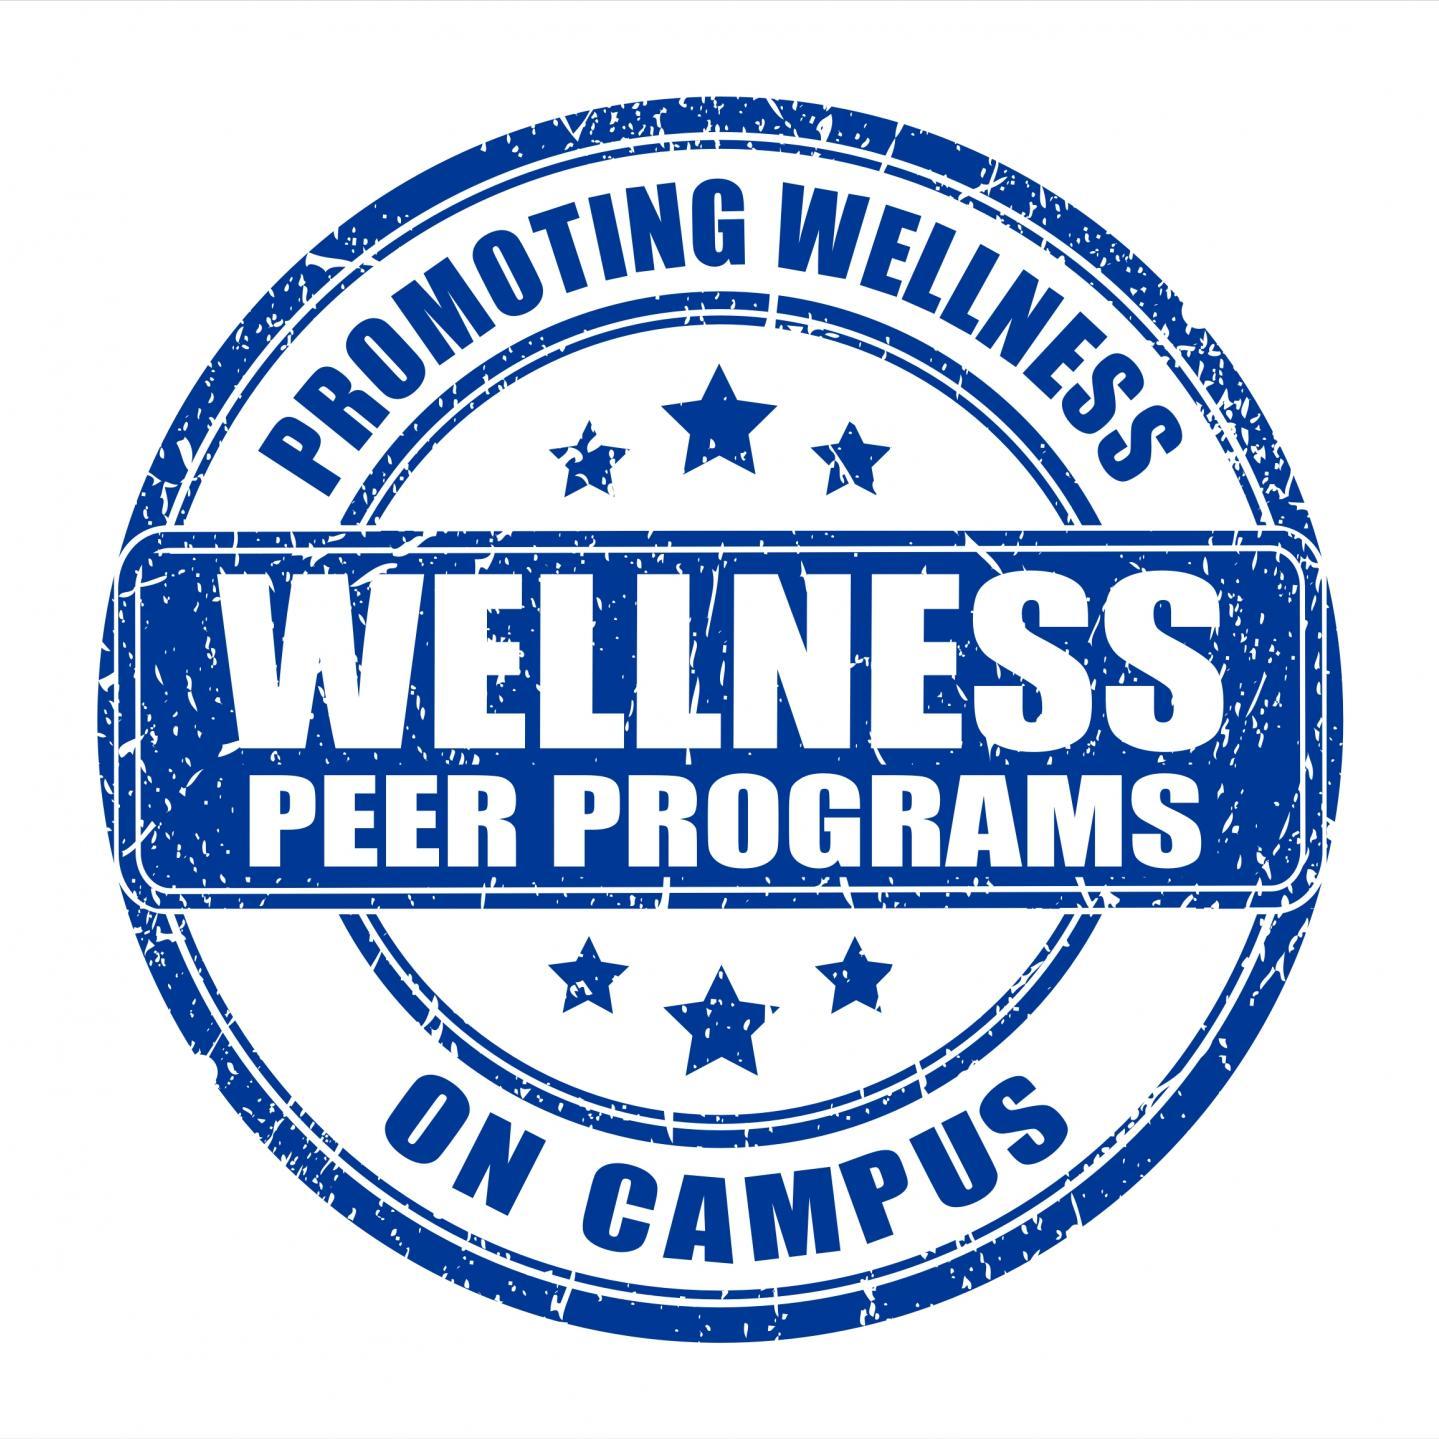 promoting wellness peer programs